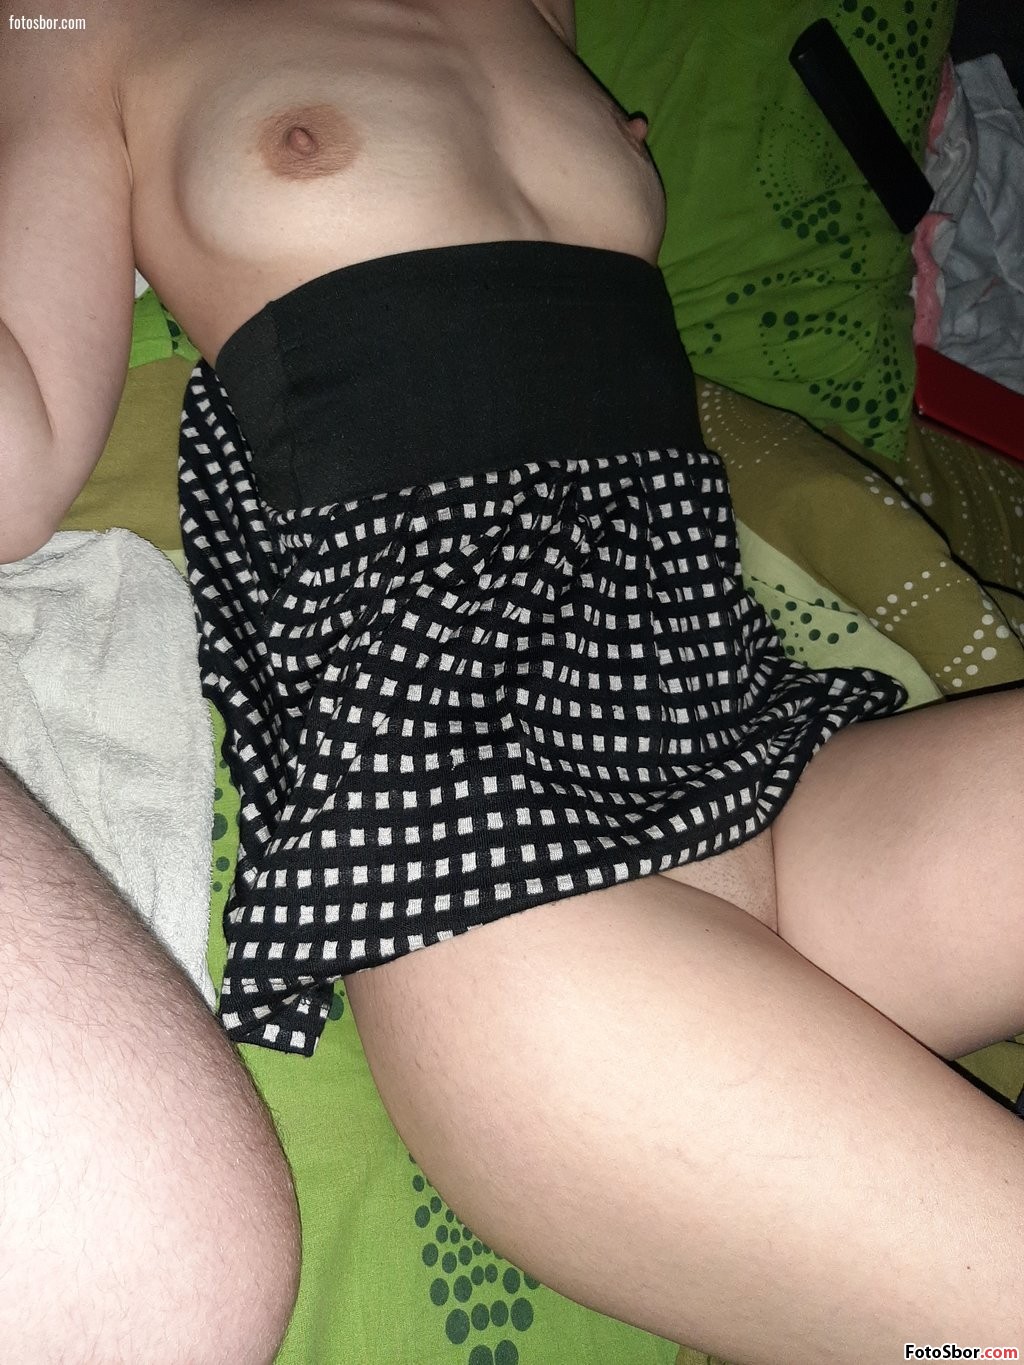 Порно фото Жена лежит в одной юбке смотреть бесплатно